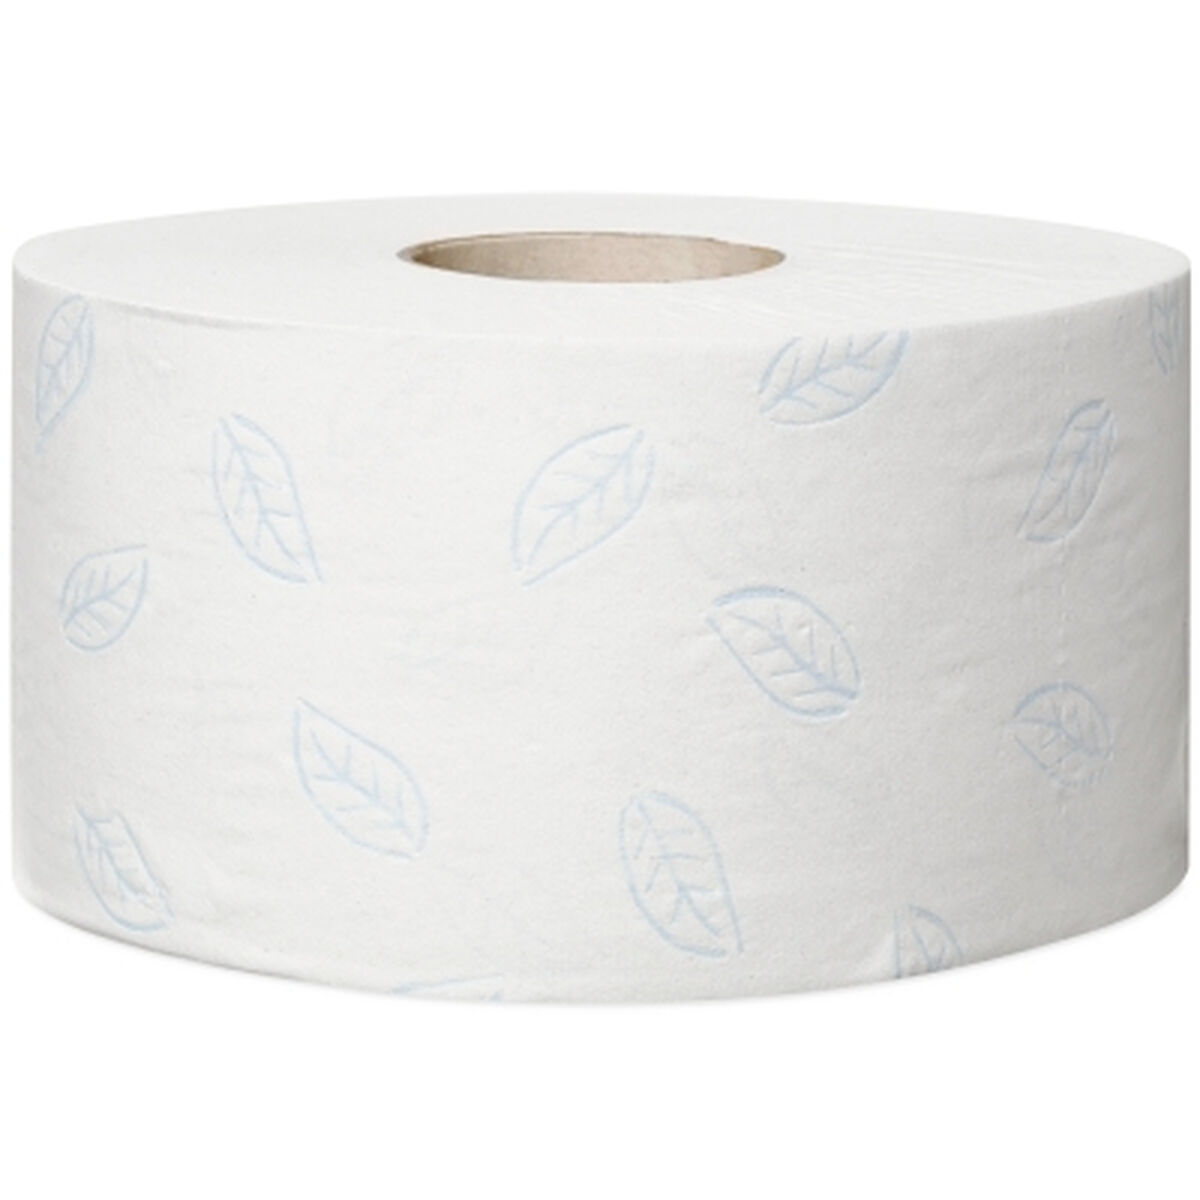 Papier Toilette Tork Ø 18,8 cm (12 Unités)